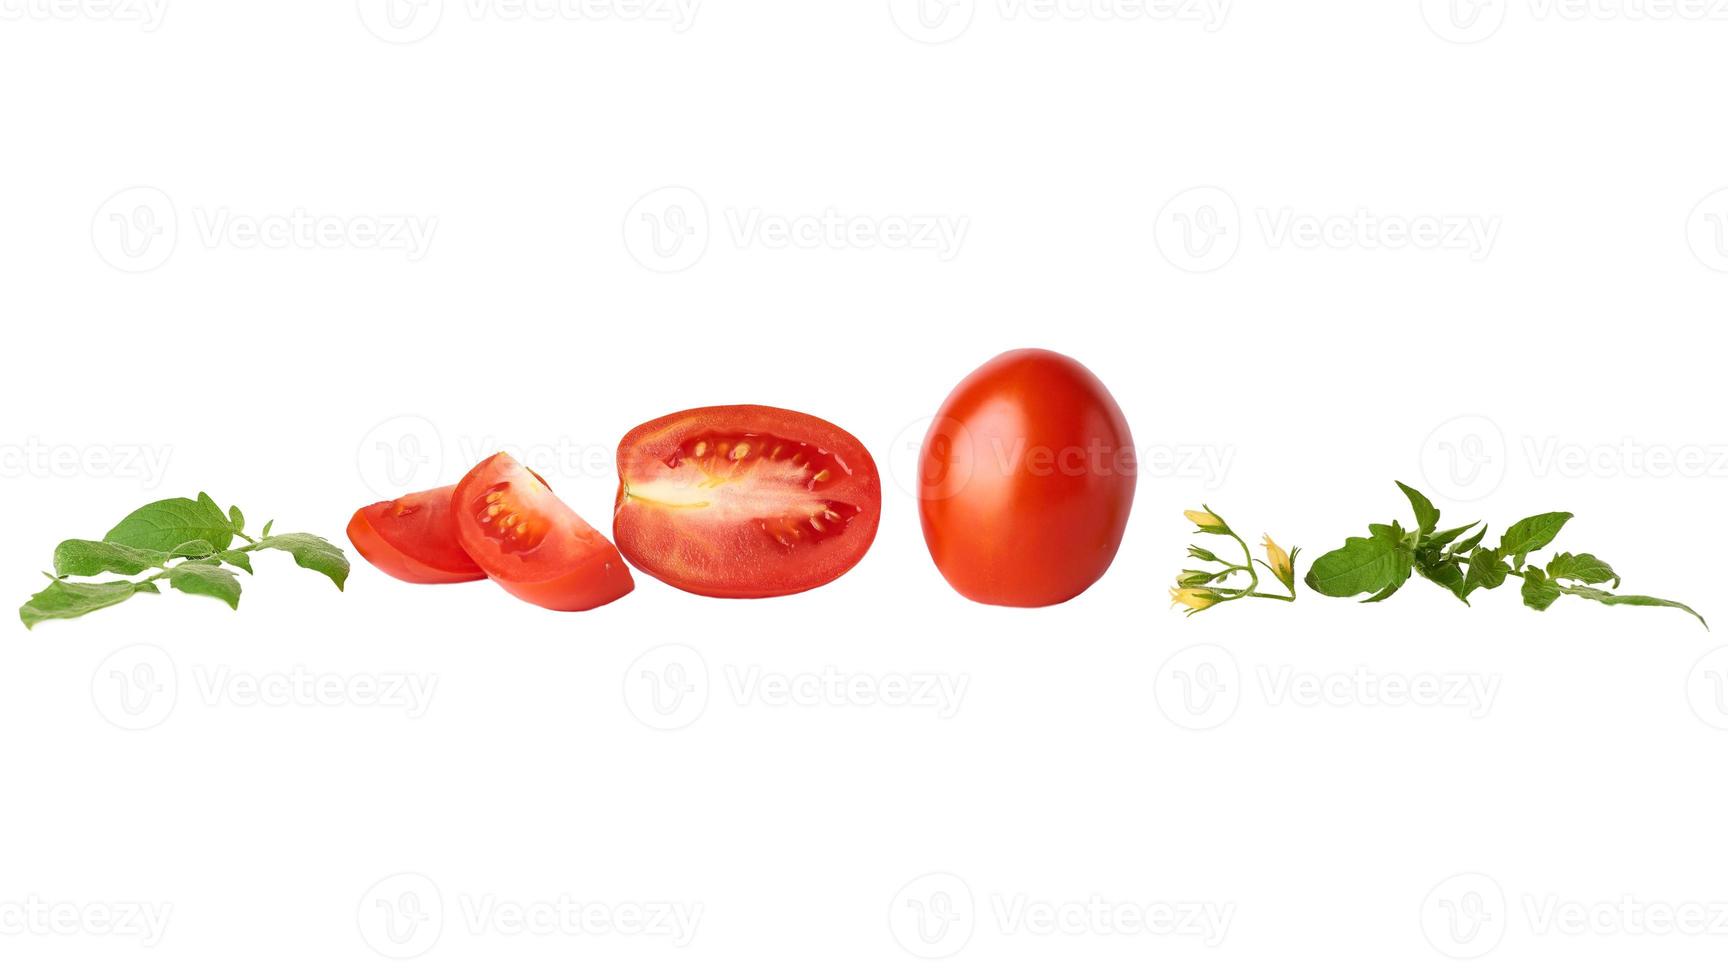 tomates inteiros vermelhos maduros e fatias, folha verde sobre um fundo branco foto